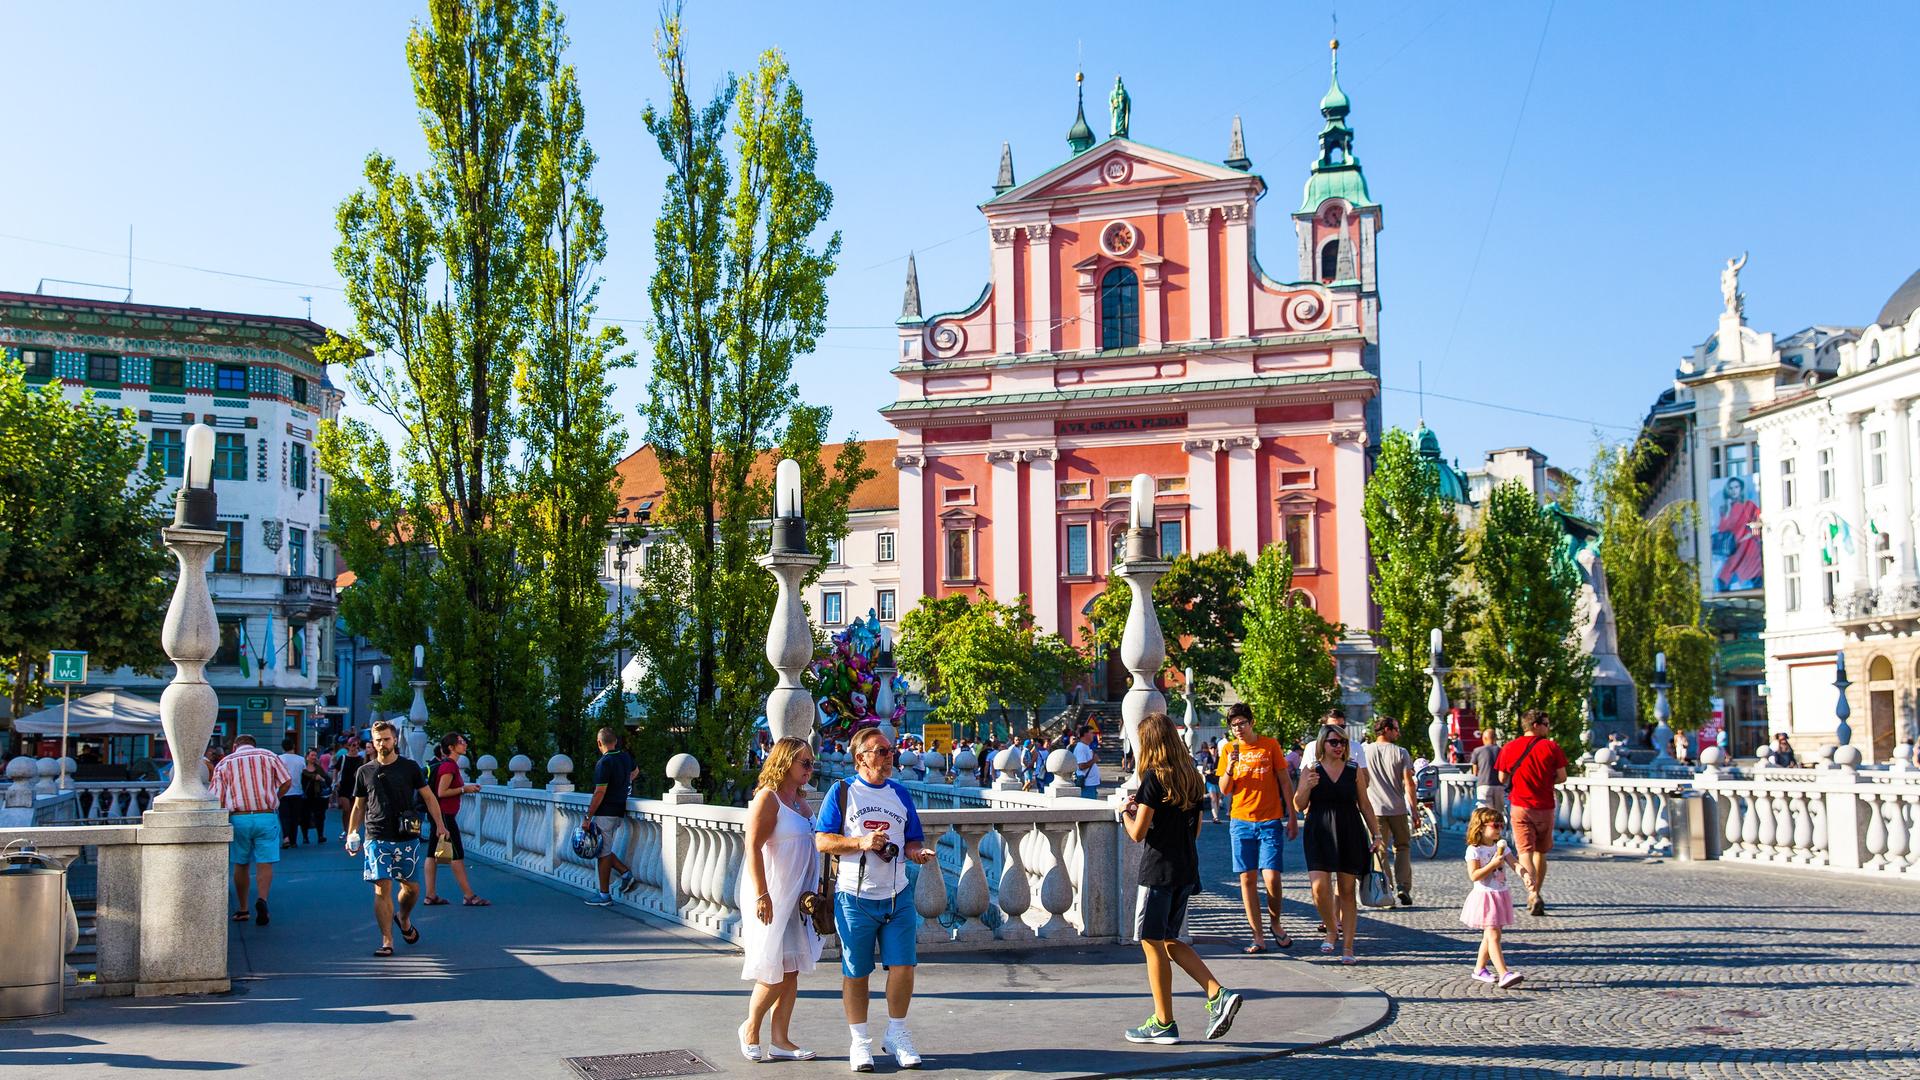 Der Preseren-Platz, die Fußgängerzone in der Hauptstadt Ljubljana mit den drei Brücken (Tromostovje) und vielen Menschen und der rosa Franziskanerkirche.